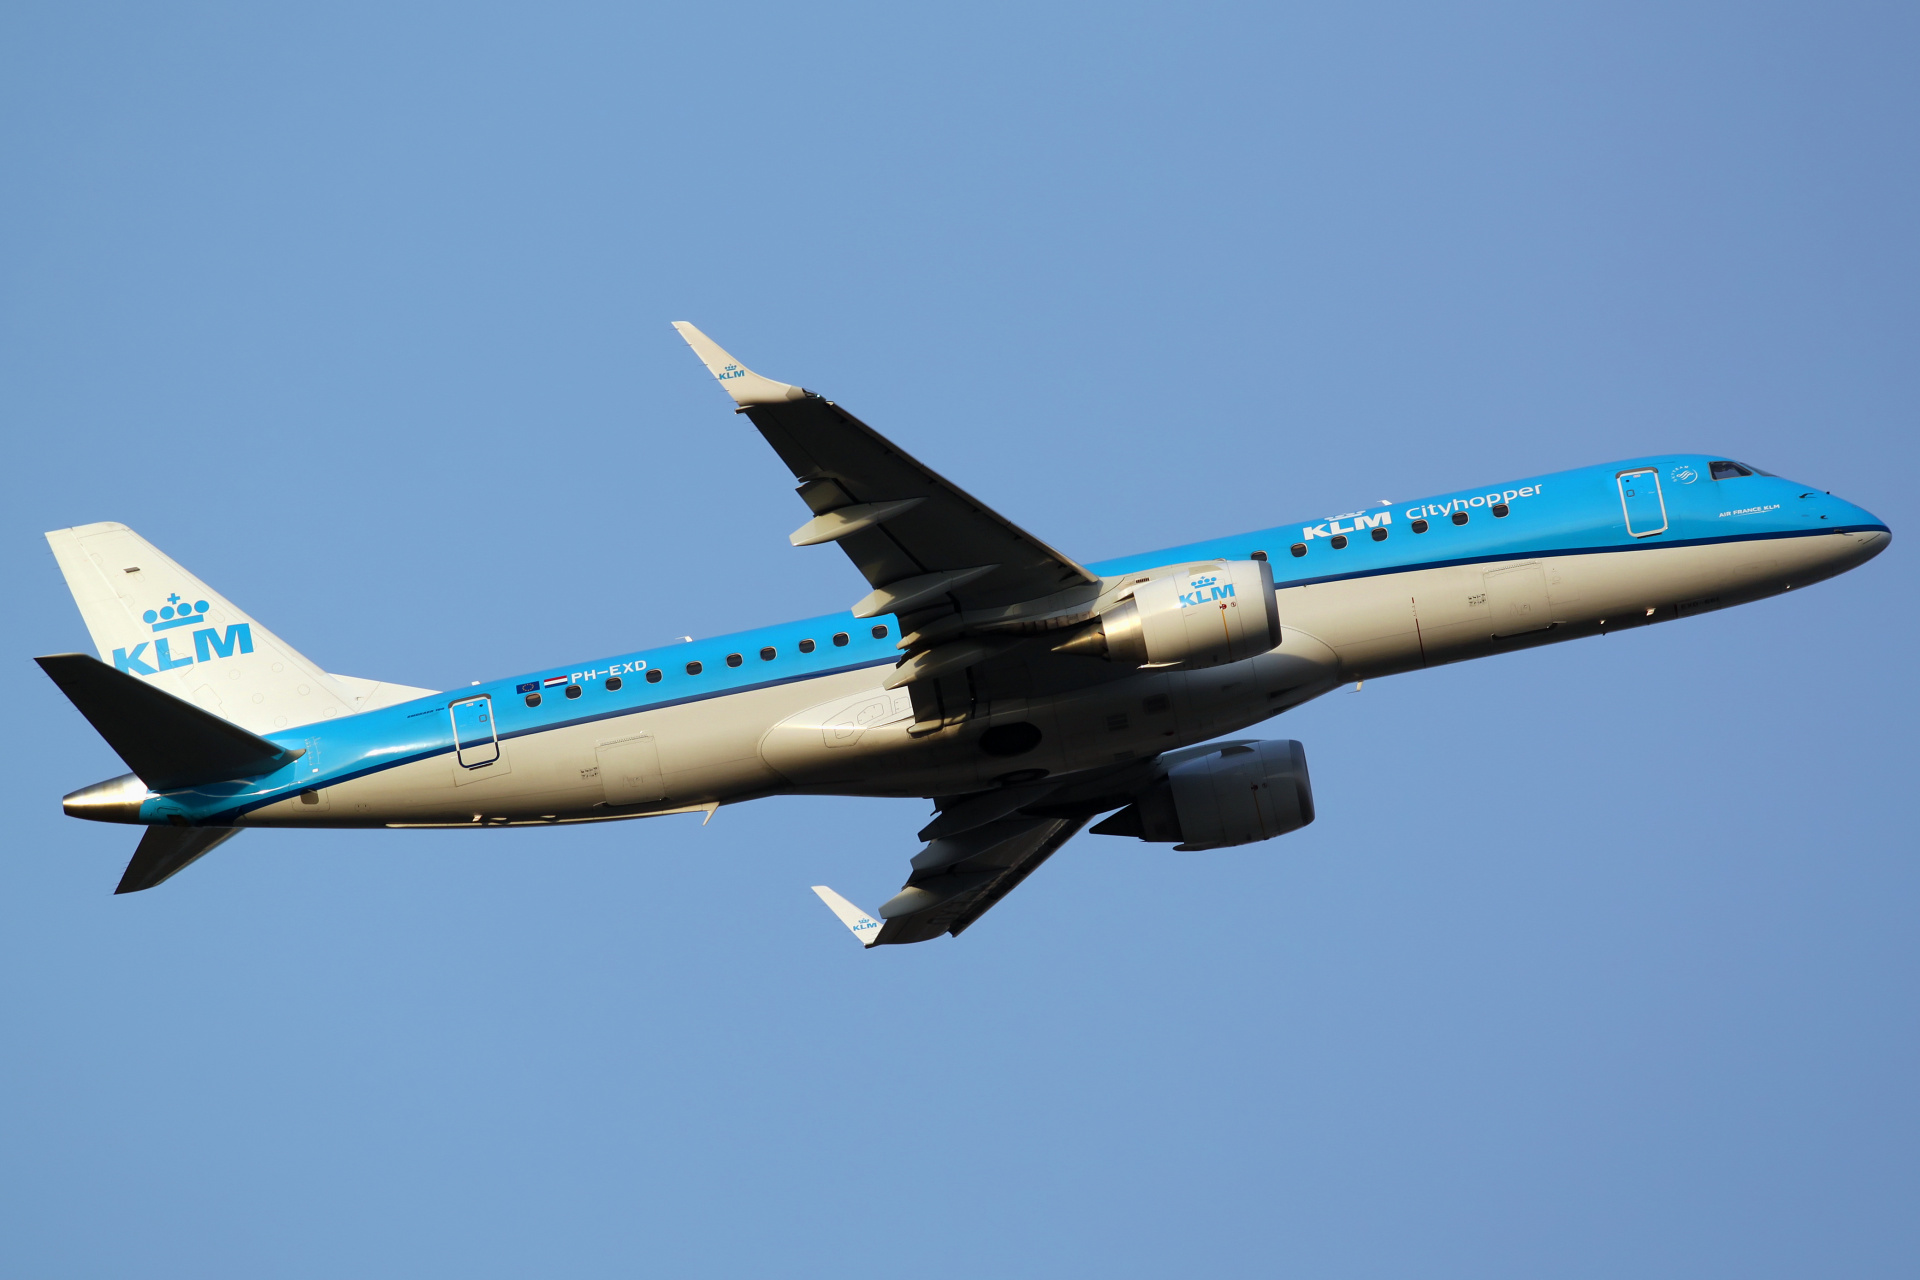 PH-EXD (Aircraft » EPWA Spotting » Embraer E190 » KLM Cityhopper)